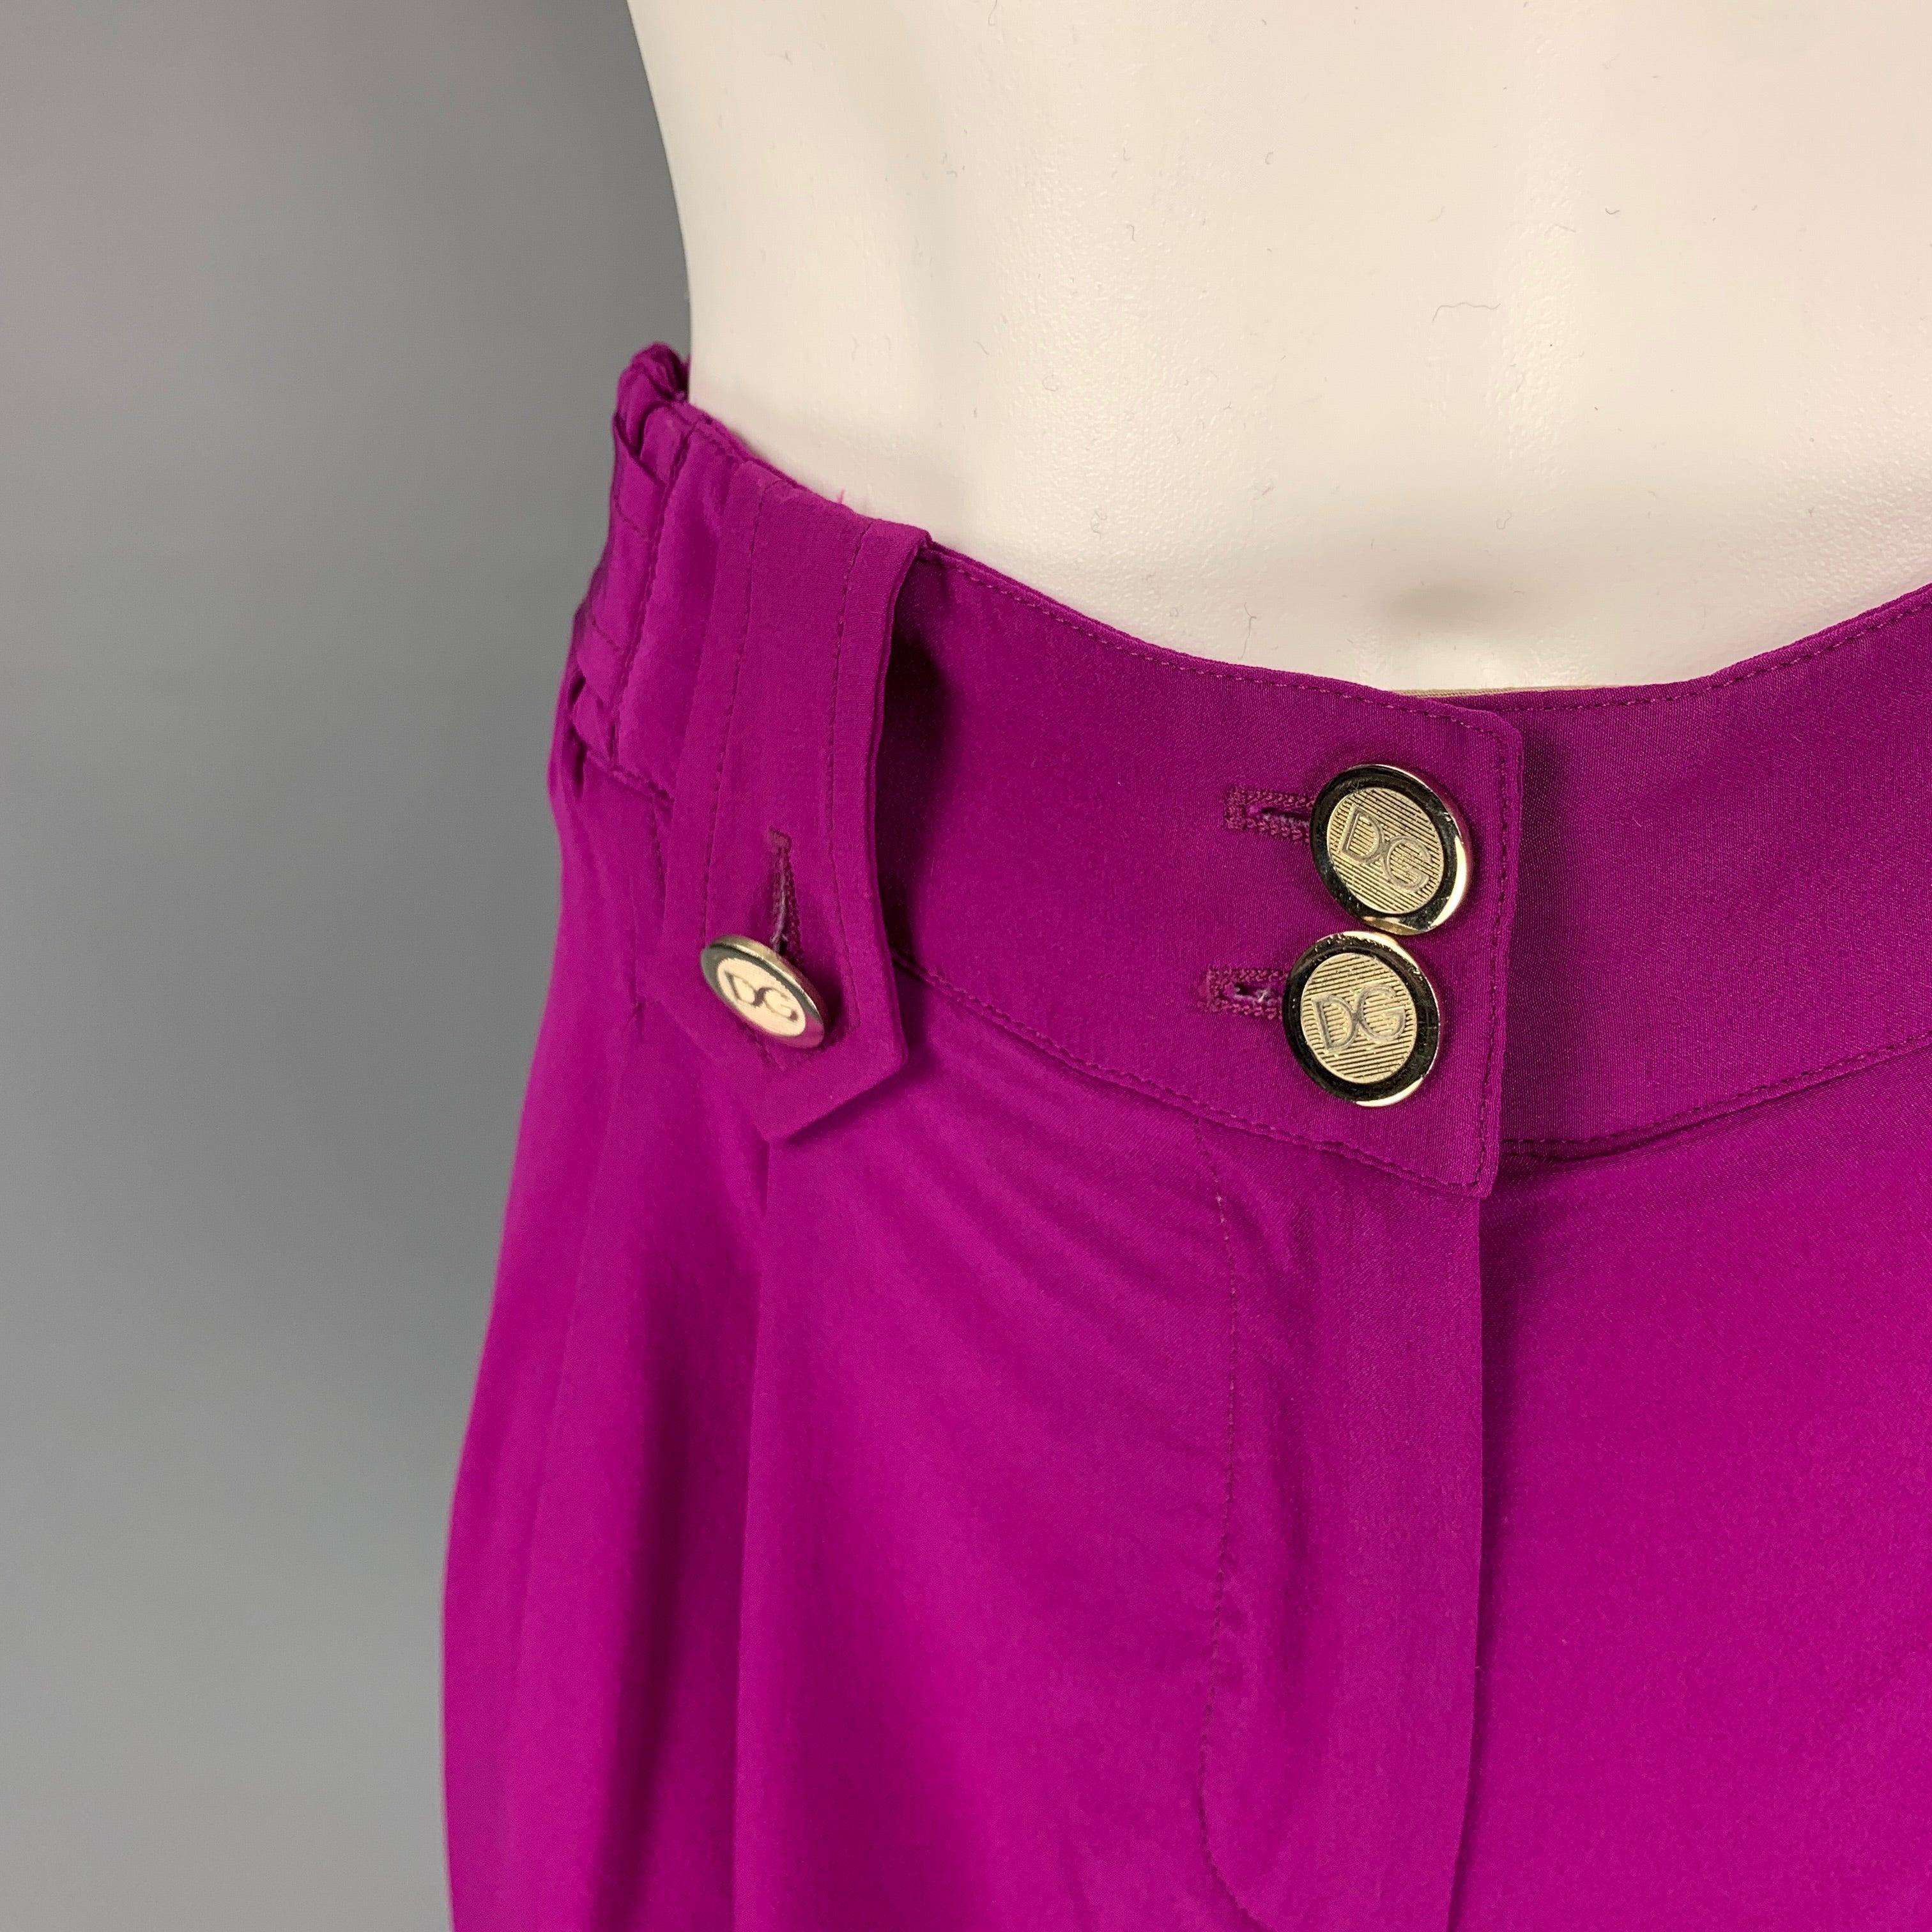 DOLCE & GABBANA Shorts aus violetter Seide mit beigem Saum, Plissee, goldfarbenen Logoknöpfen und Reißverschluss. Hergestellt in Italien.
Sehr gut
Gebrauchtes Zustand. 

Markiert:   40 

Abmessungen: 
  Taille: 30 Zoll  Steigung: 9 Zoll  Innennaht: